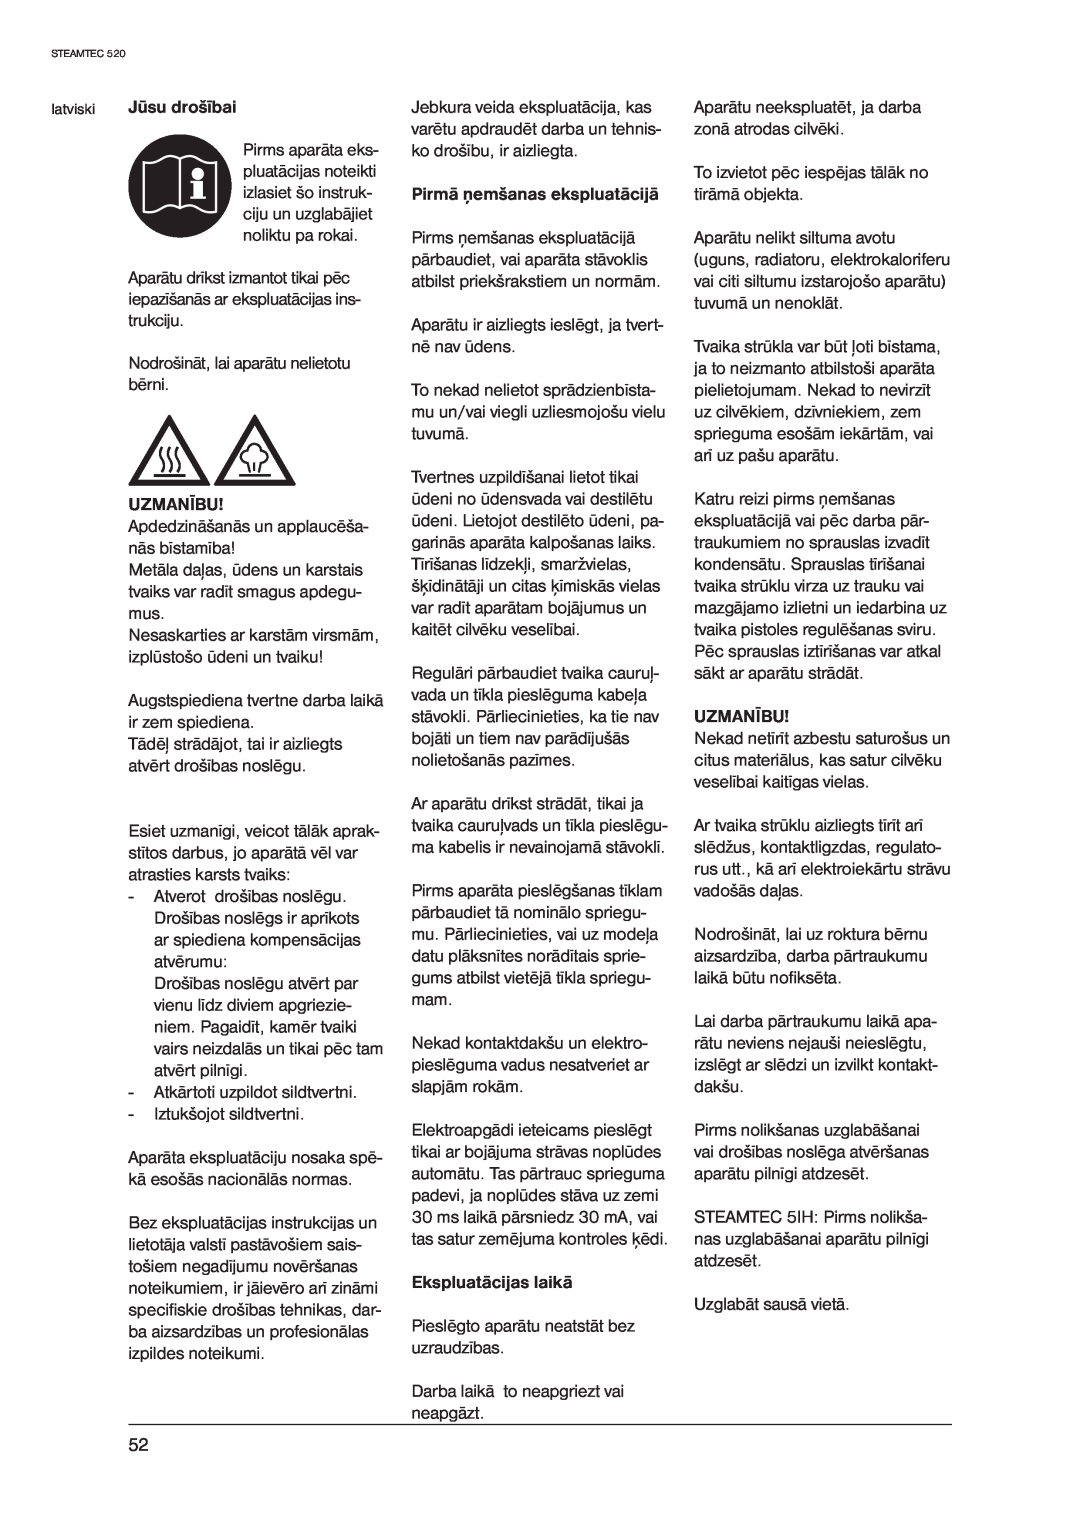 Nilfisk-ALTO 520 manual latviski Jūsu drošībai, Uzmanību, Pirmā ņemšanas ekspluatācijā, Ekspluatācijas laikā 